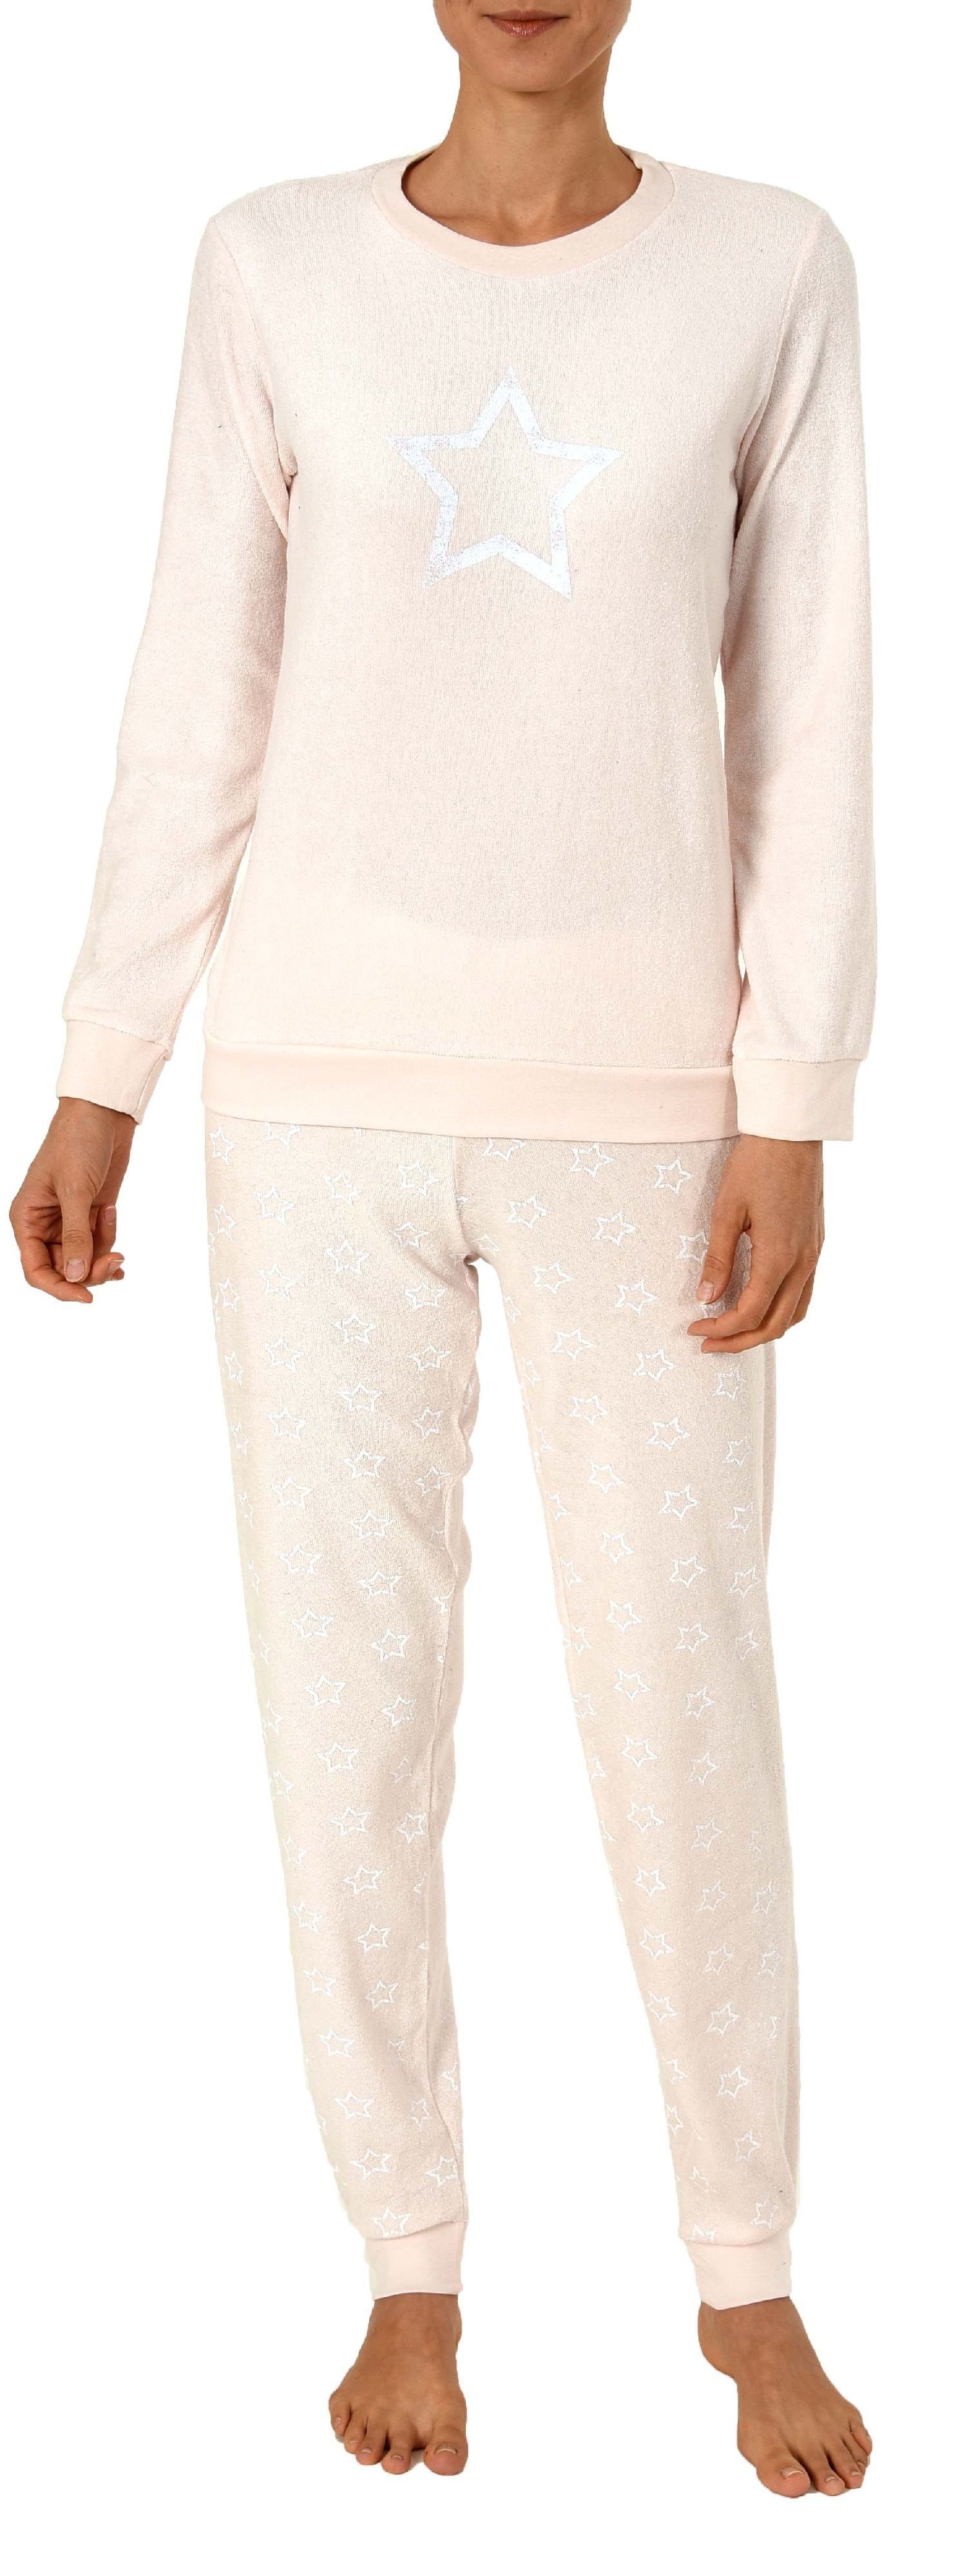 Schlafanzug Sterne Normann + by Pyjama Optik Pyjama mit Damen rose langarm RELAX Frottee Bündchen